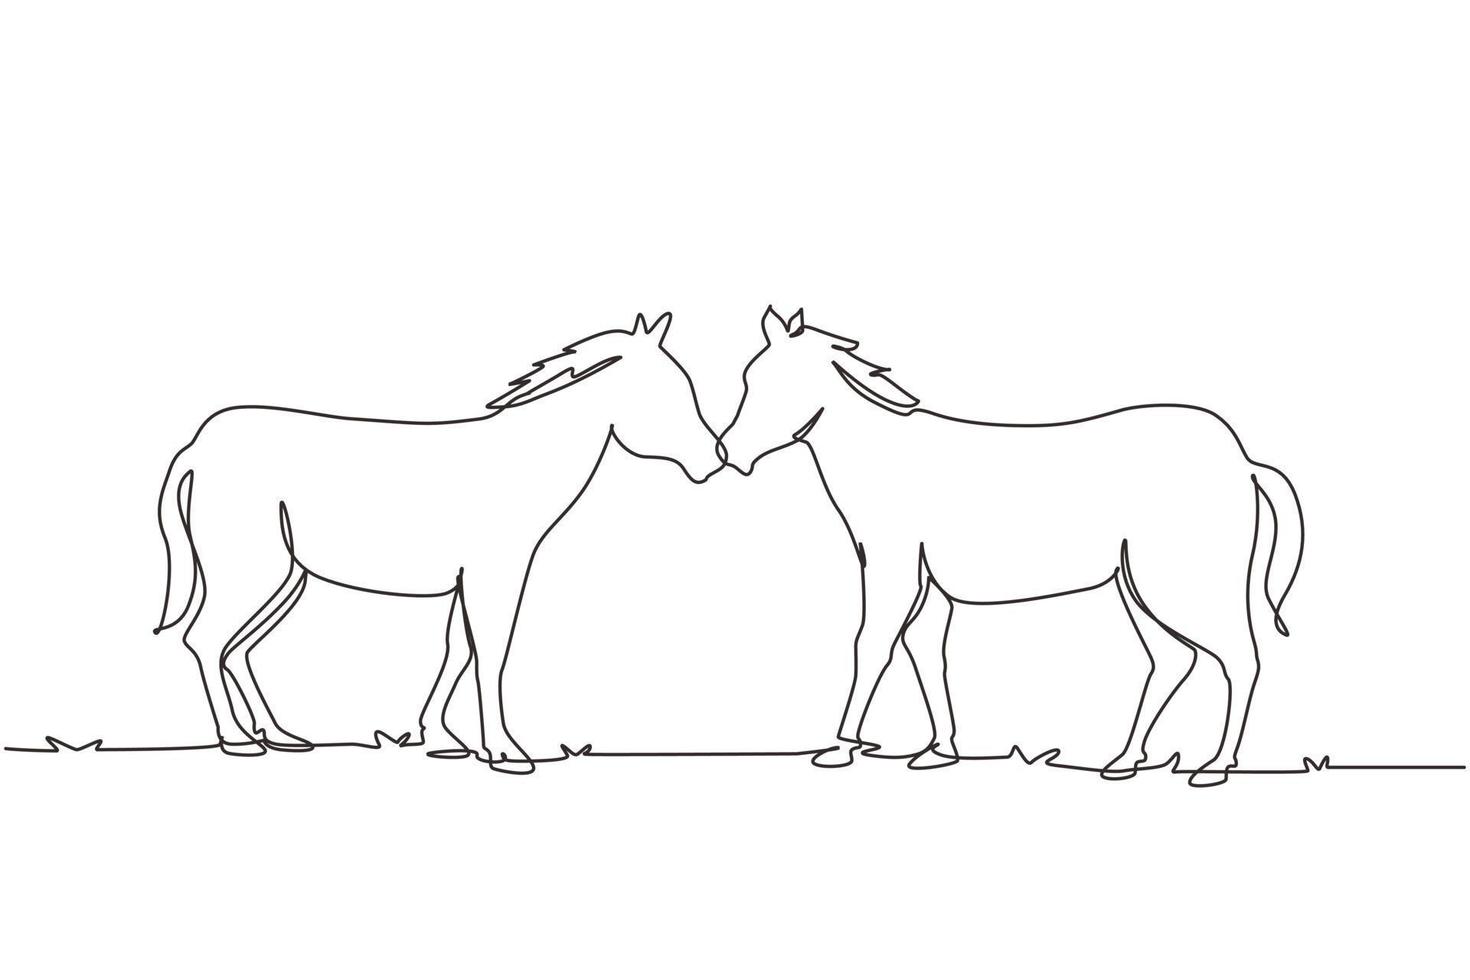 Eine einzige durchgehende Linie, die zwei Pferde zeichnet, geht anmutig von Angesicht zu Angesicht. wilder mustang galoppiert in freier natur. Tiermaskottchen für Pferderanch. dynamische einzeilige abgehobene betragsgrafikdesign-vektorillustration vektor